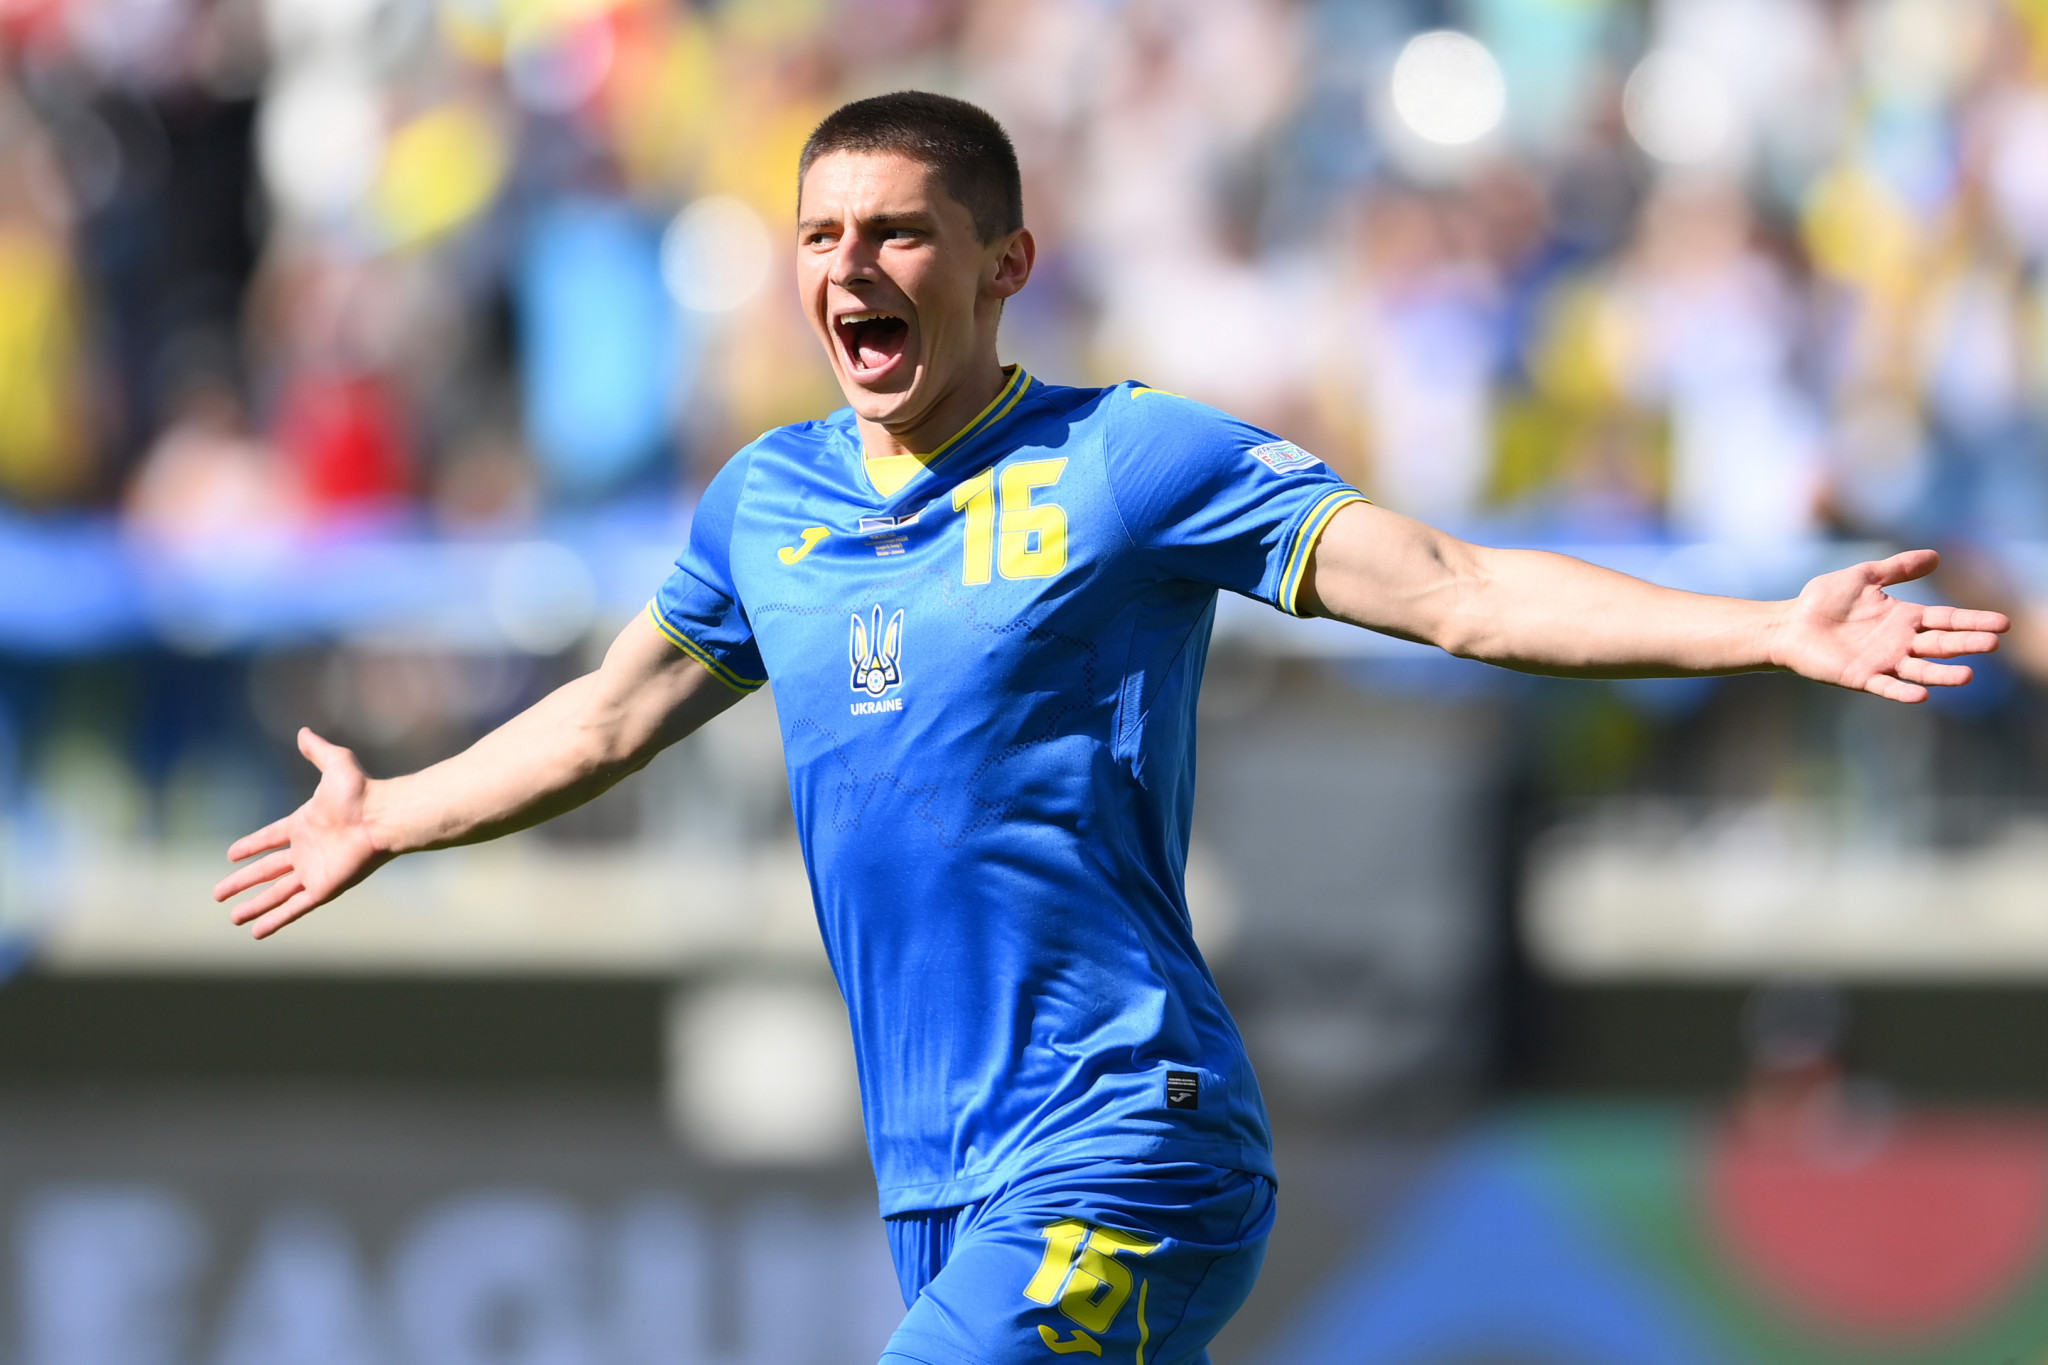 Ukraine footballer Mykolenko says war has put personal struggles into perspective